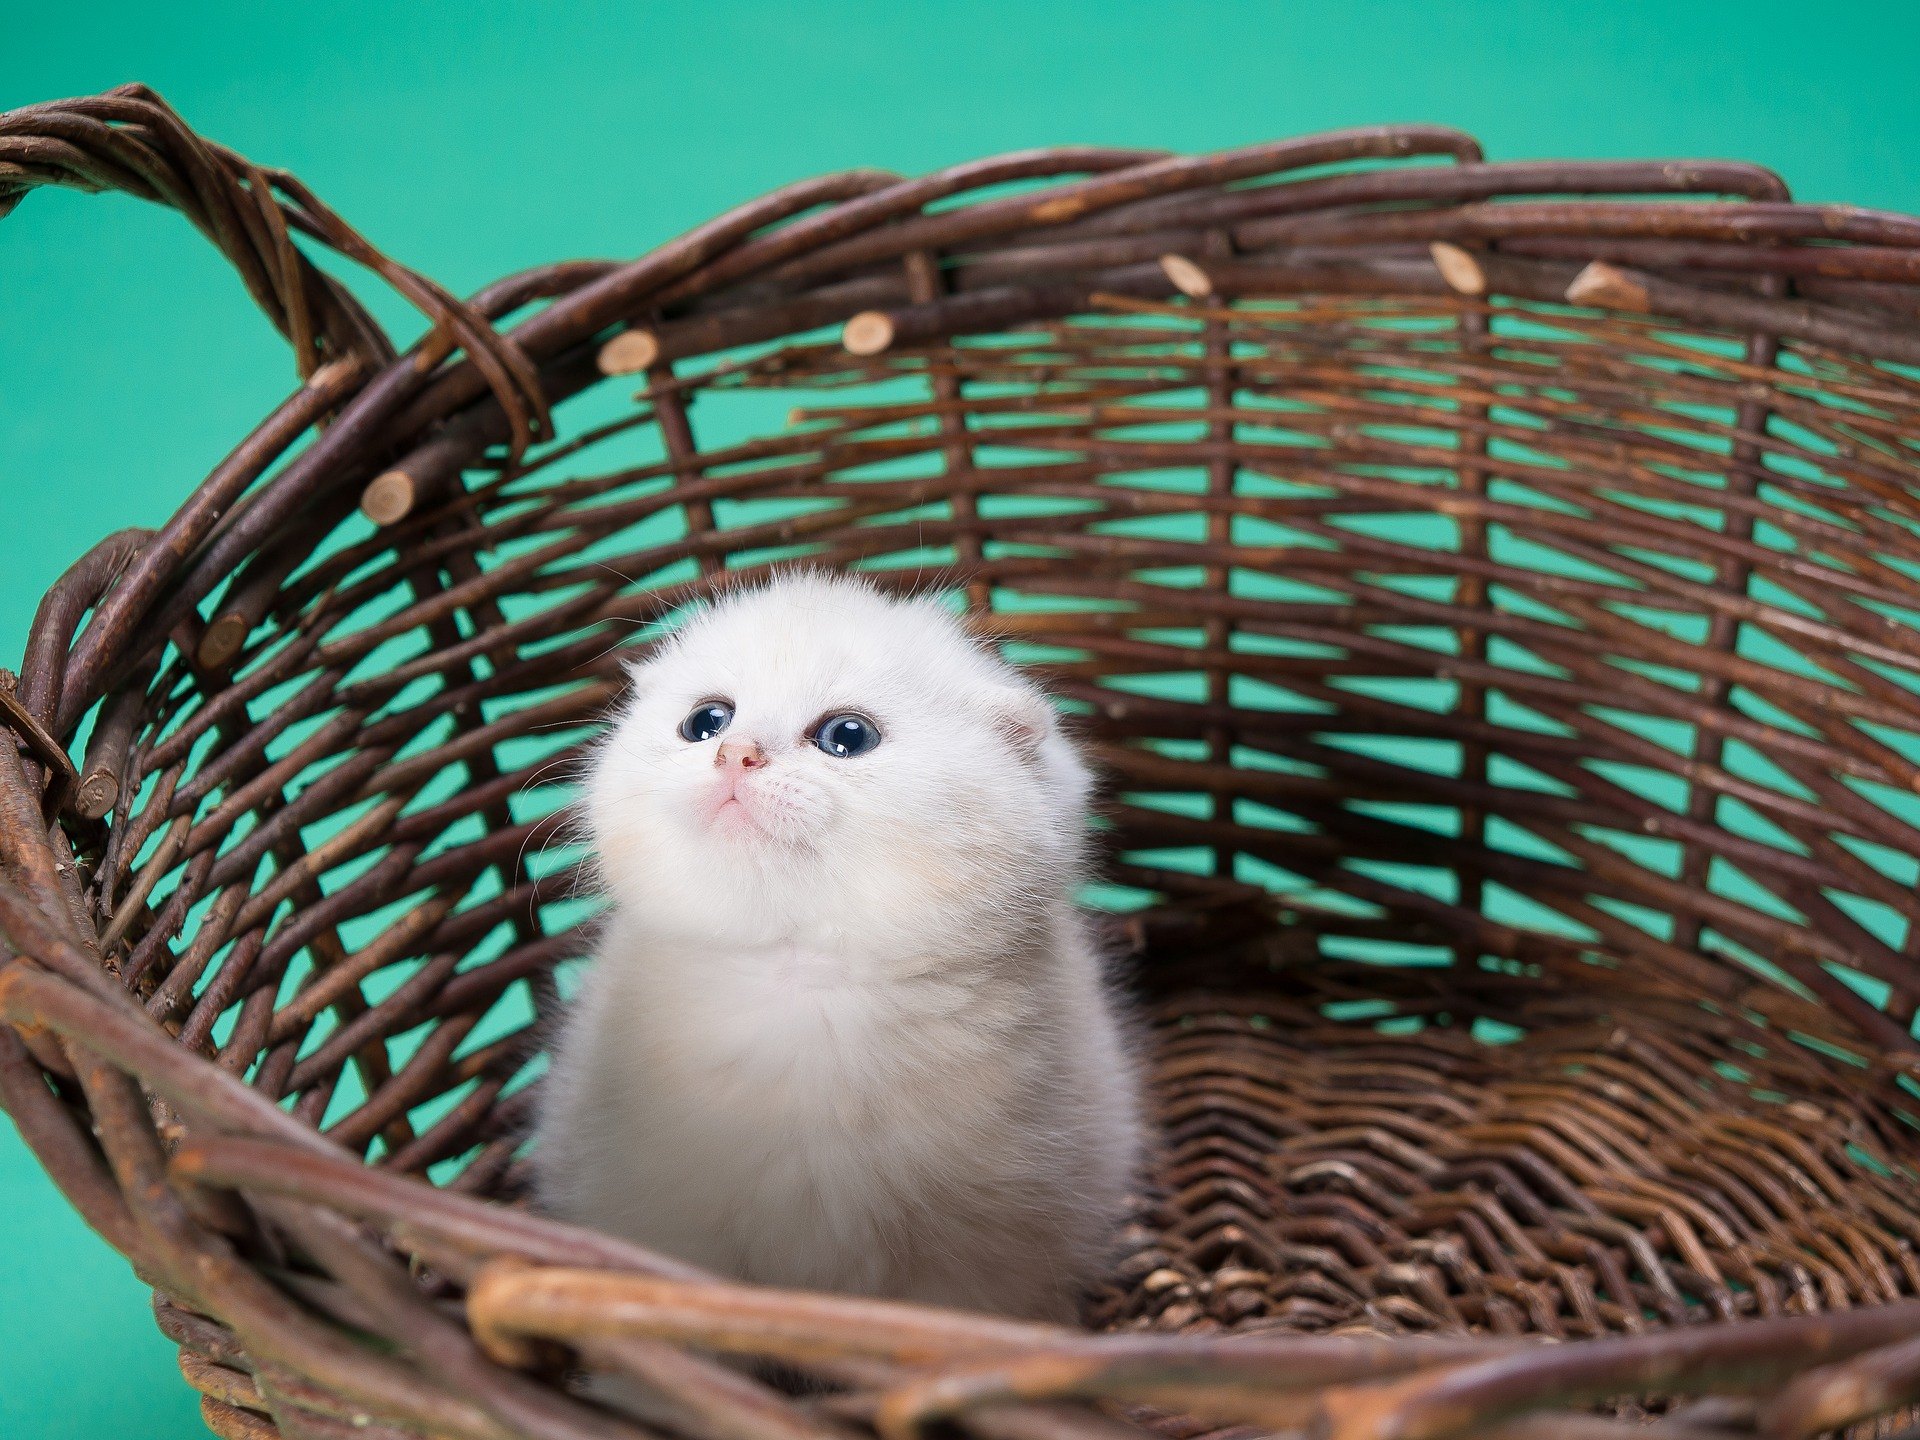 Mačacia výbavička sa skladá z vecí, ktoré sú určené ako pre pohodlie domáceho miláčika, tak aj majiteľa.